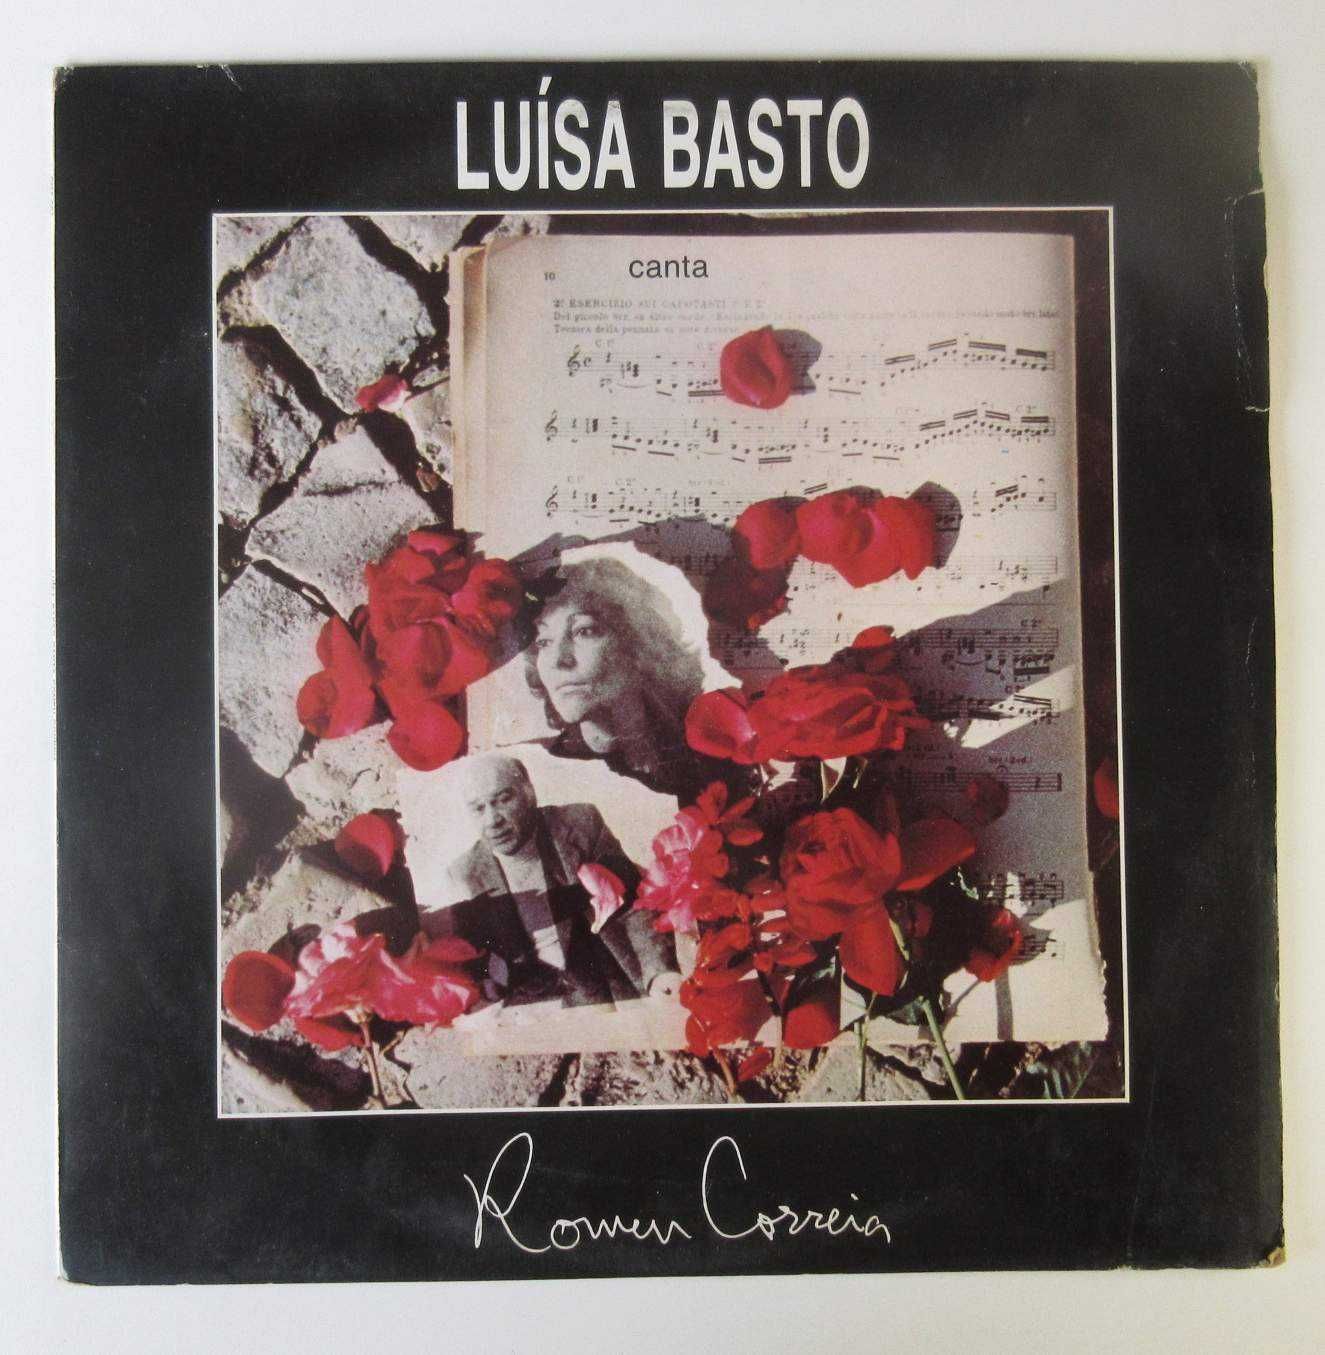 LUÍSA BASTO - Canta Romeu Correia (LP)